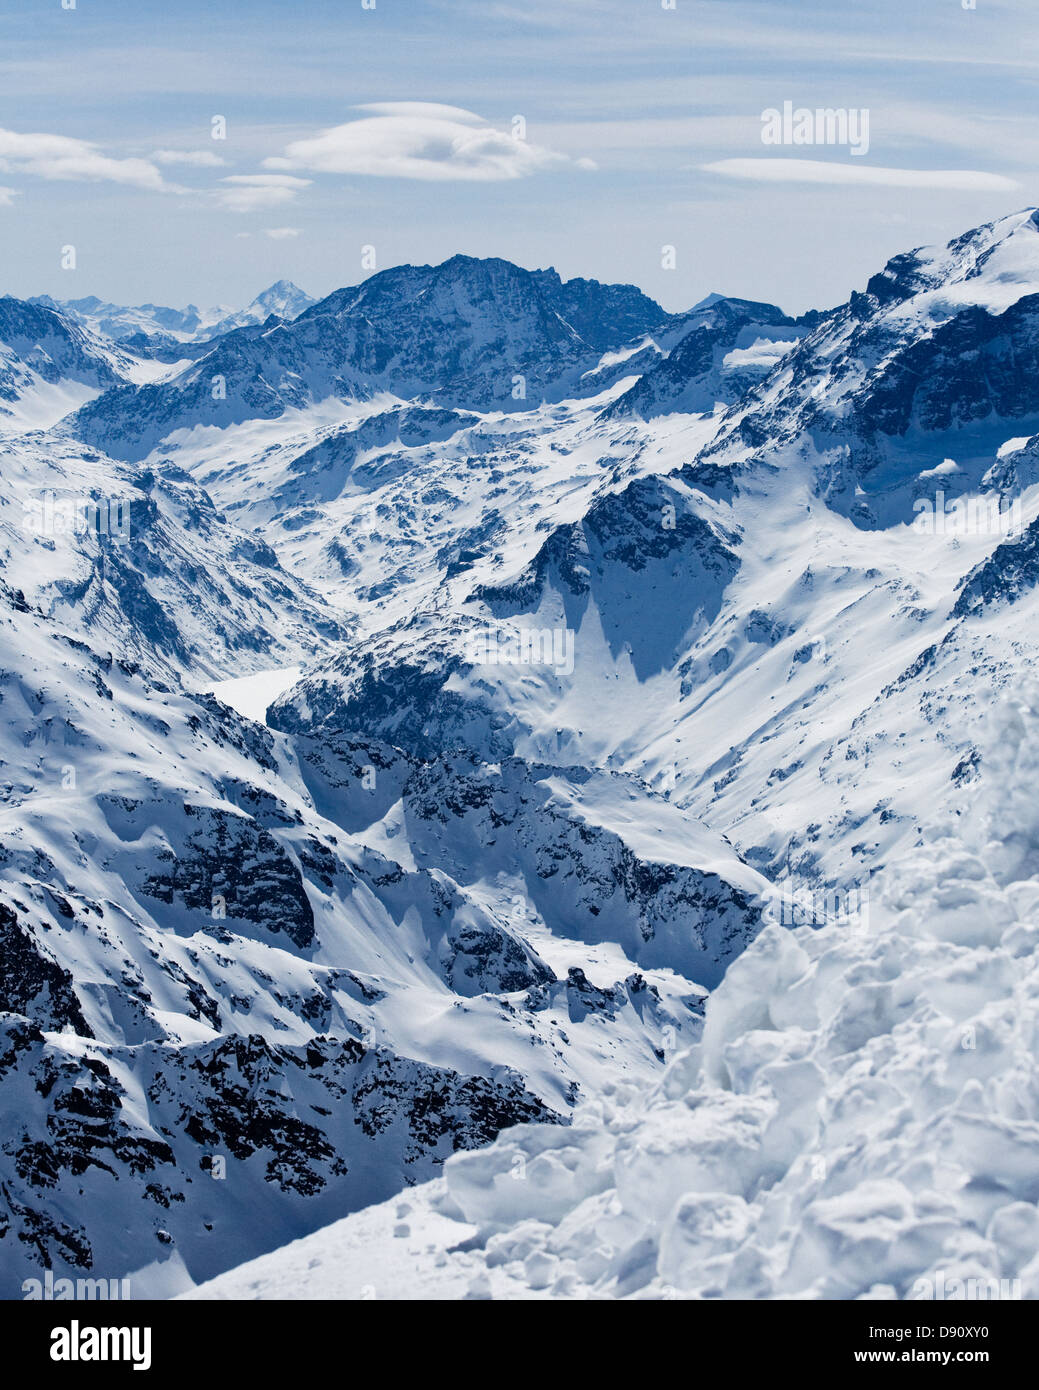 Scenics view of the Alps Stock Photo